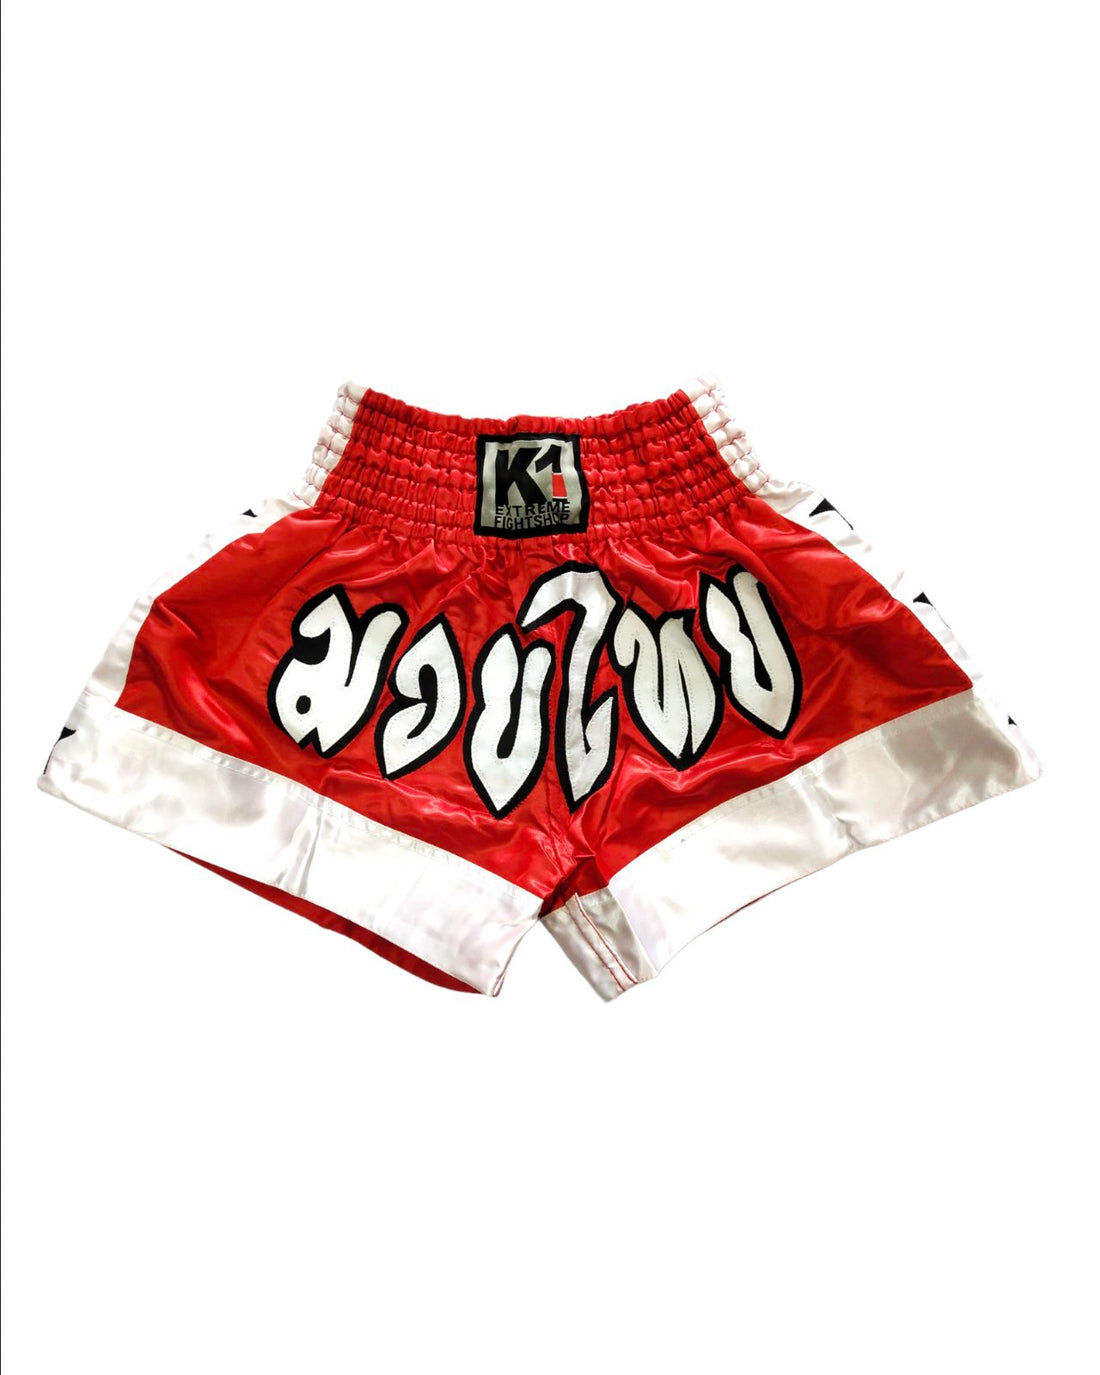 K-1 Muaythai Fight Shorts [Red/White] – K1 Extreme Sportshop